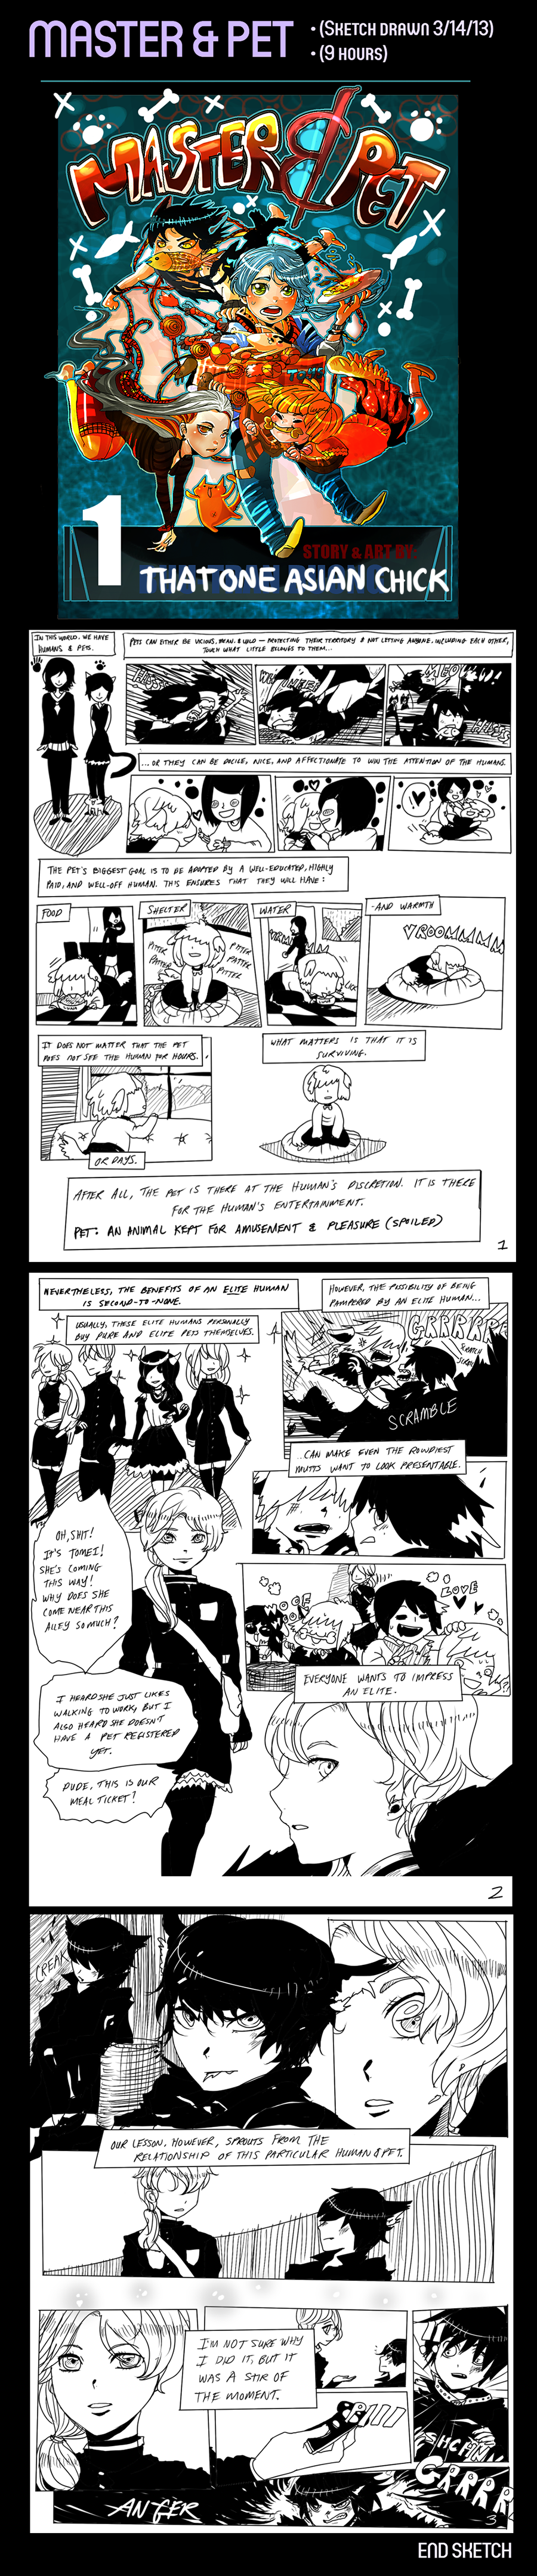 Master & Pet (Manga Sketch) by luckylace222